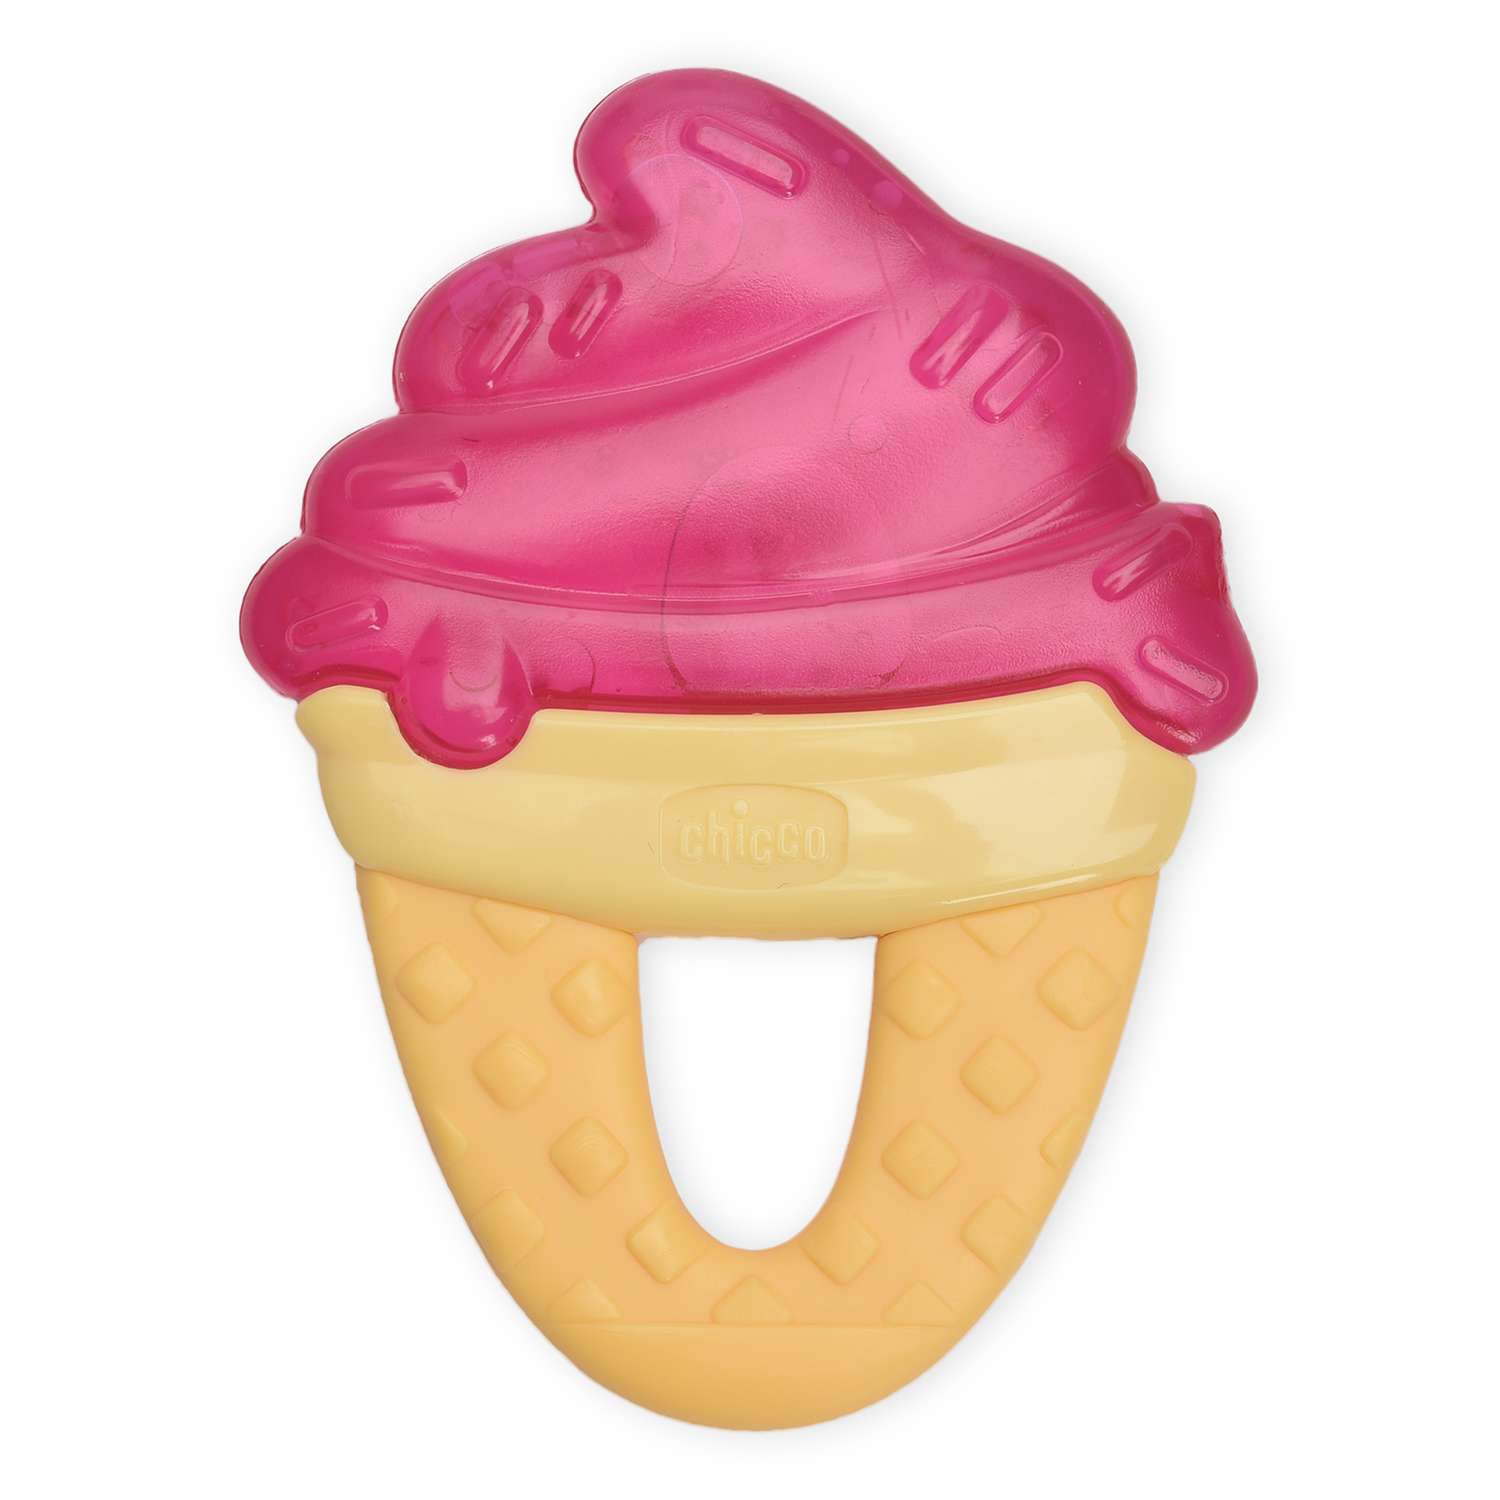 Прорезыватель Chicco игрушка FreshRelax Мороженое кр.4мес. - фото 1